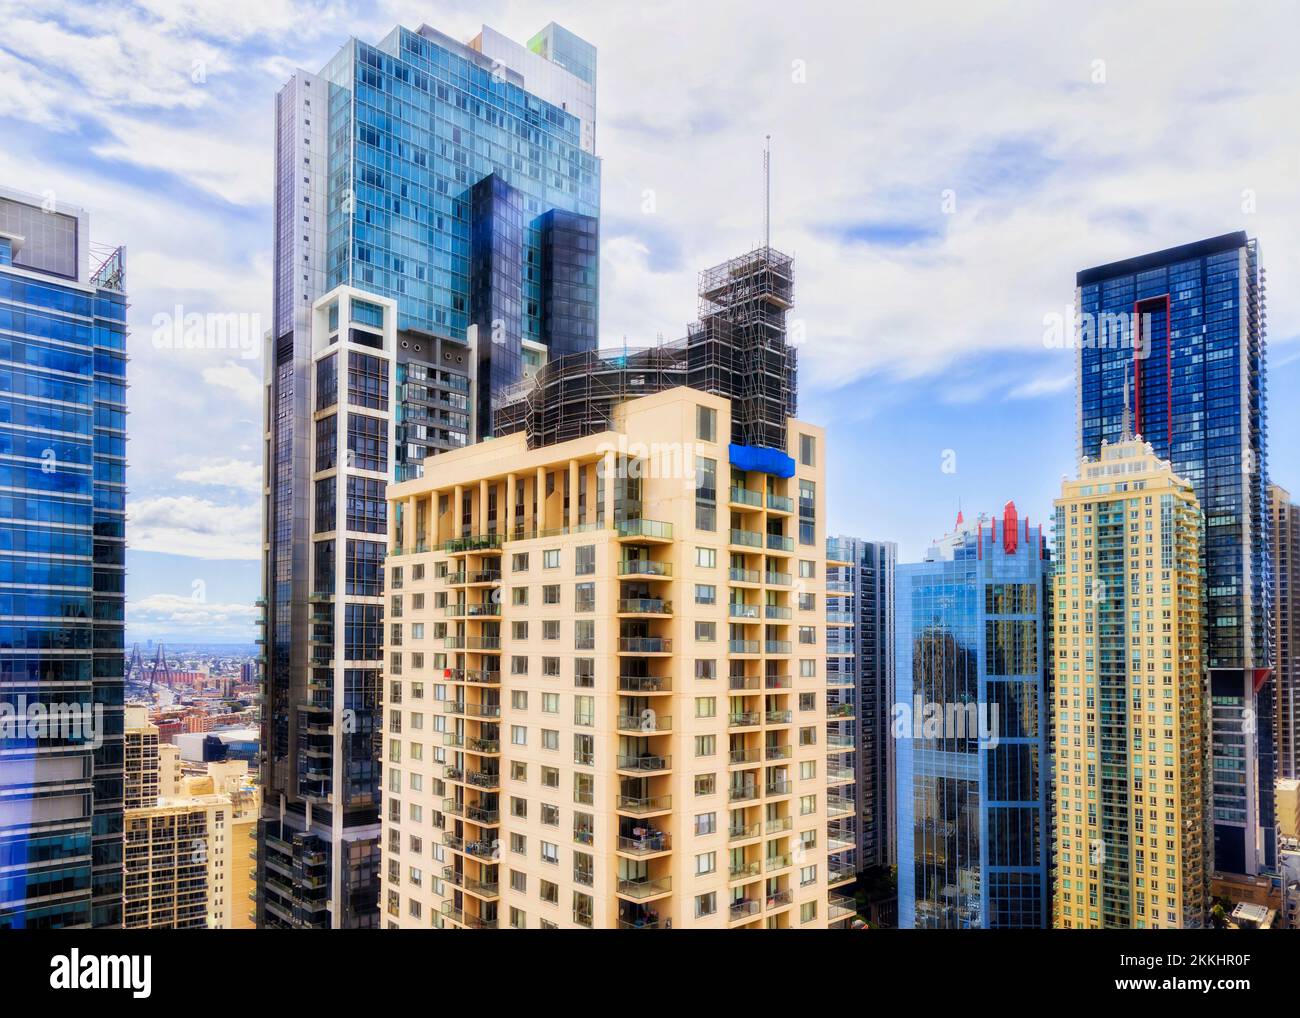 Innenstadt von Sydney City CBD - Hochhäuser mit Wohn- und Geschäftstürmen mitten in der Luft unter blauem Himmel. Stockfoto